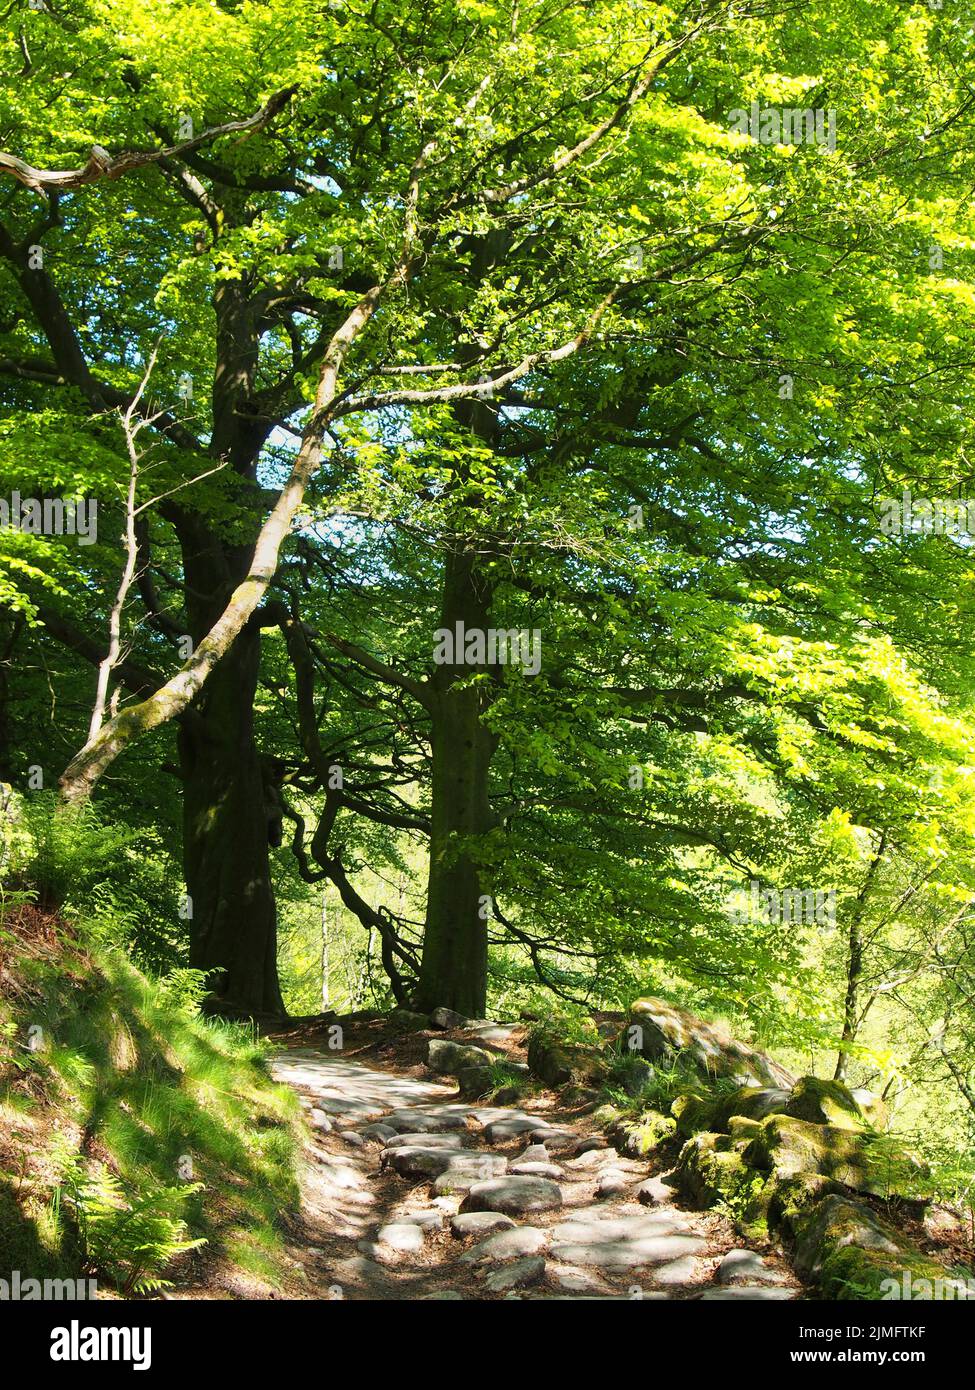 Bosco primaverile con un sentiero in pietra tra grandi faggi con foglie verde brillante illuminate da mattine luminose Foto Stock